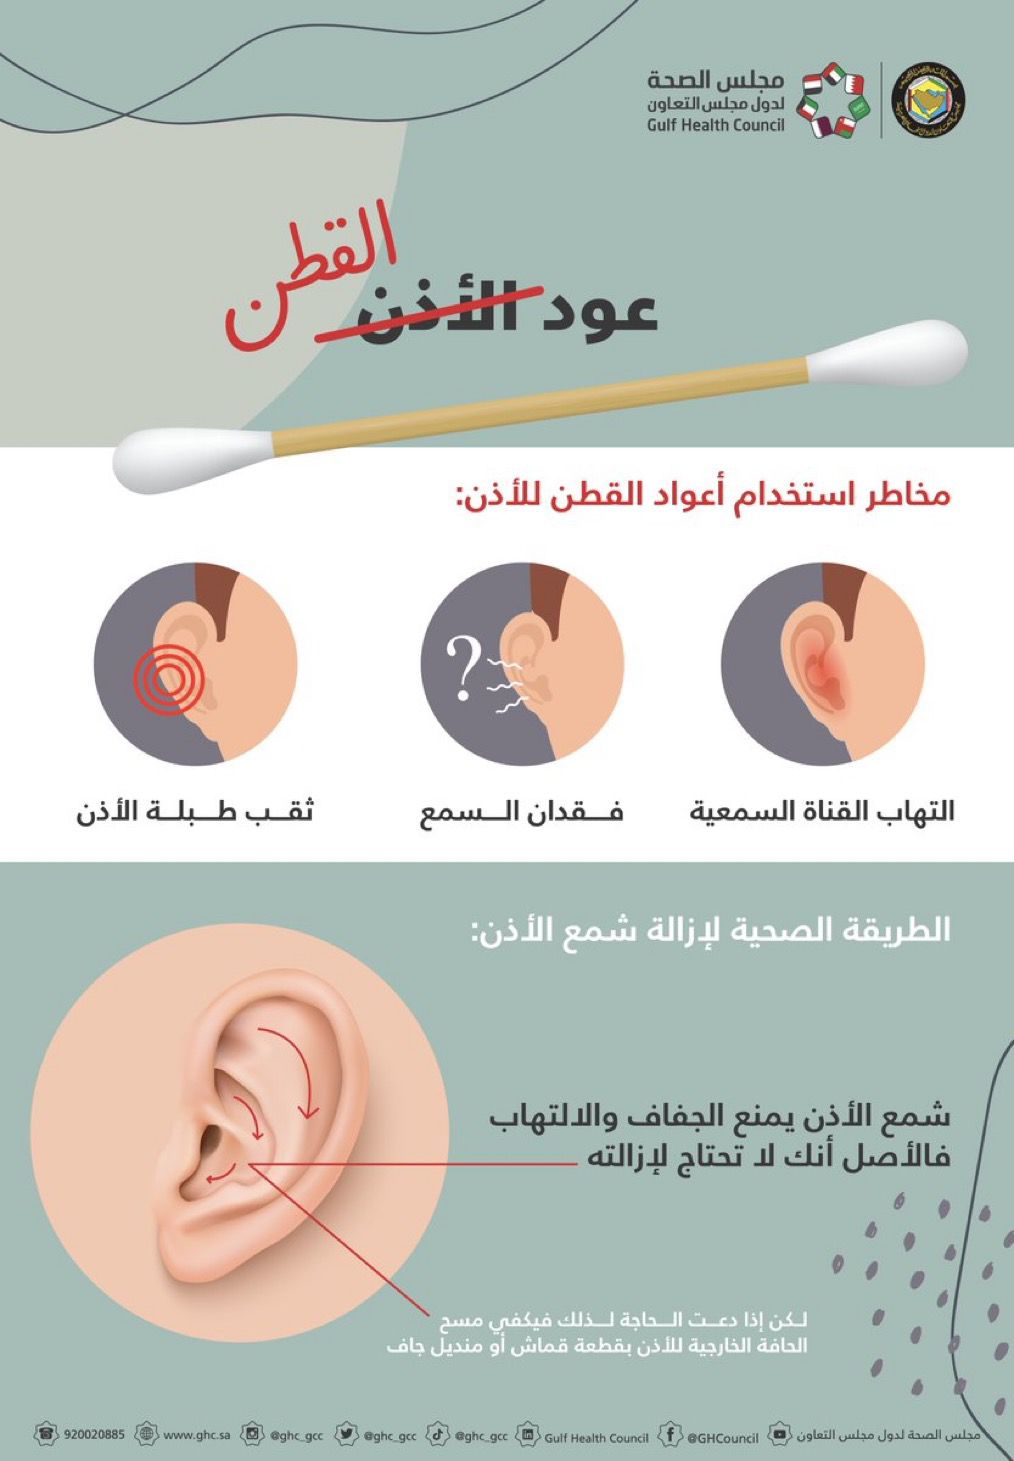 مجلس الصحة الخليجي يصحح اسم واستخدامات اعواد القطن